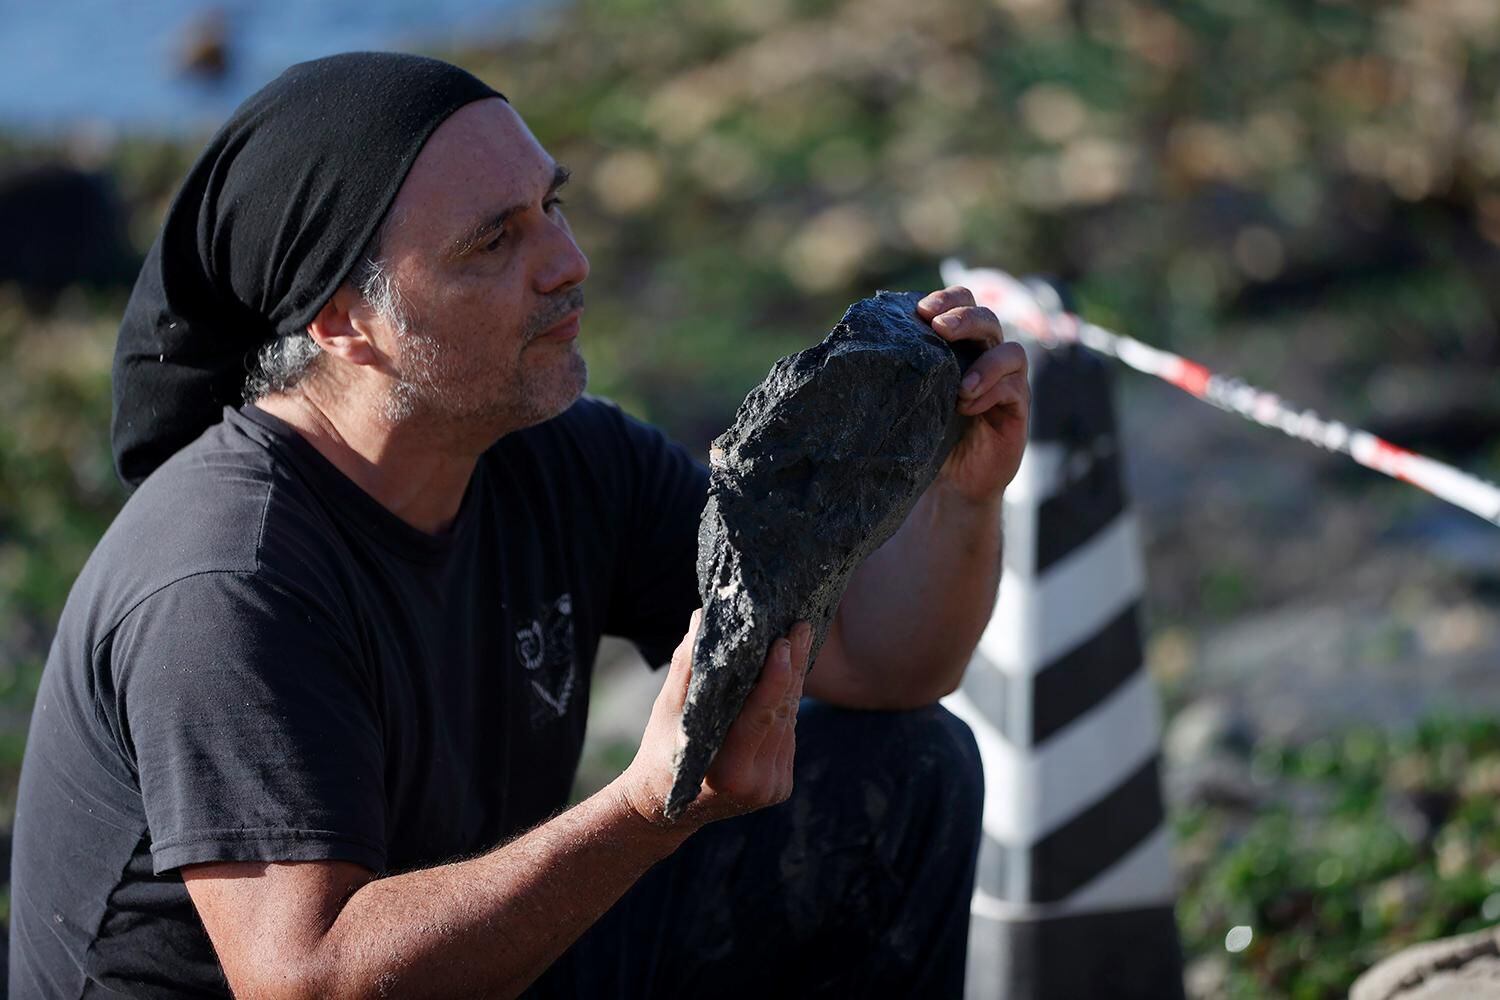 vivió hace 70 millones de años en algarrobo: rescatan nuevas piezas de enigmático reptil marino